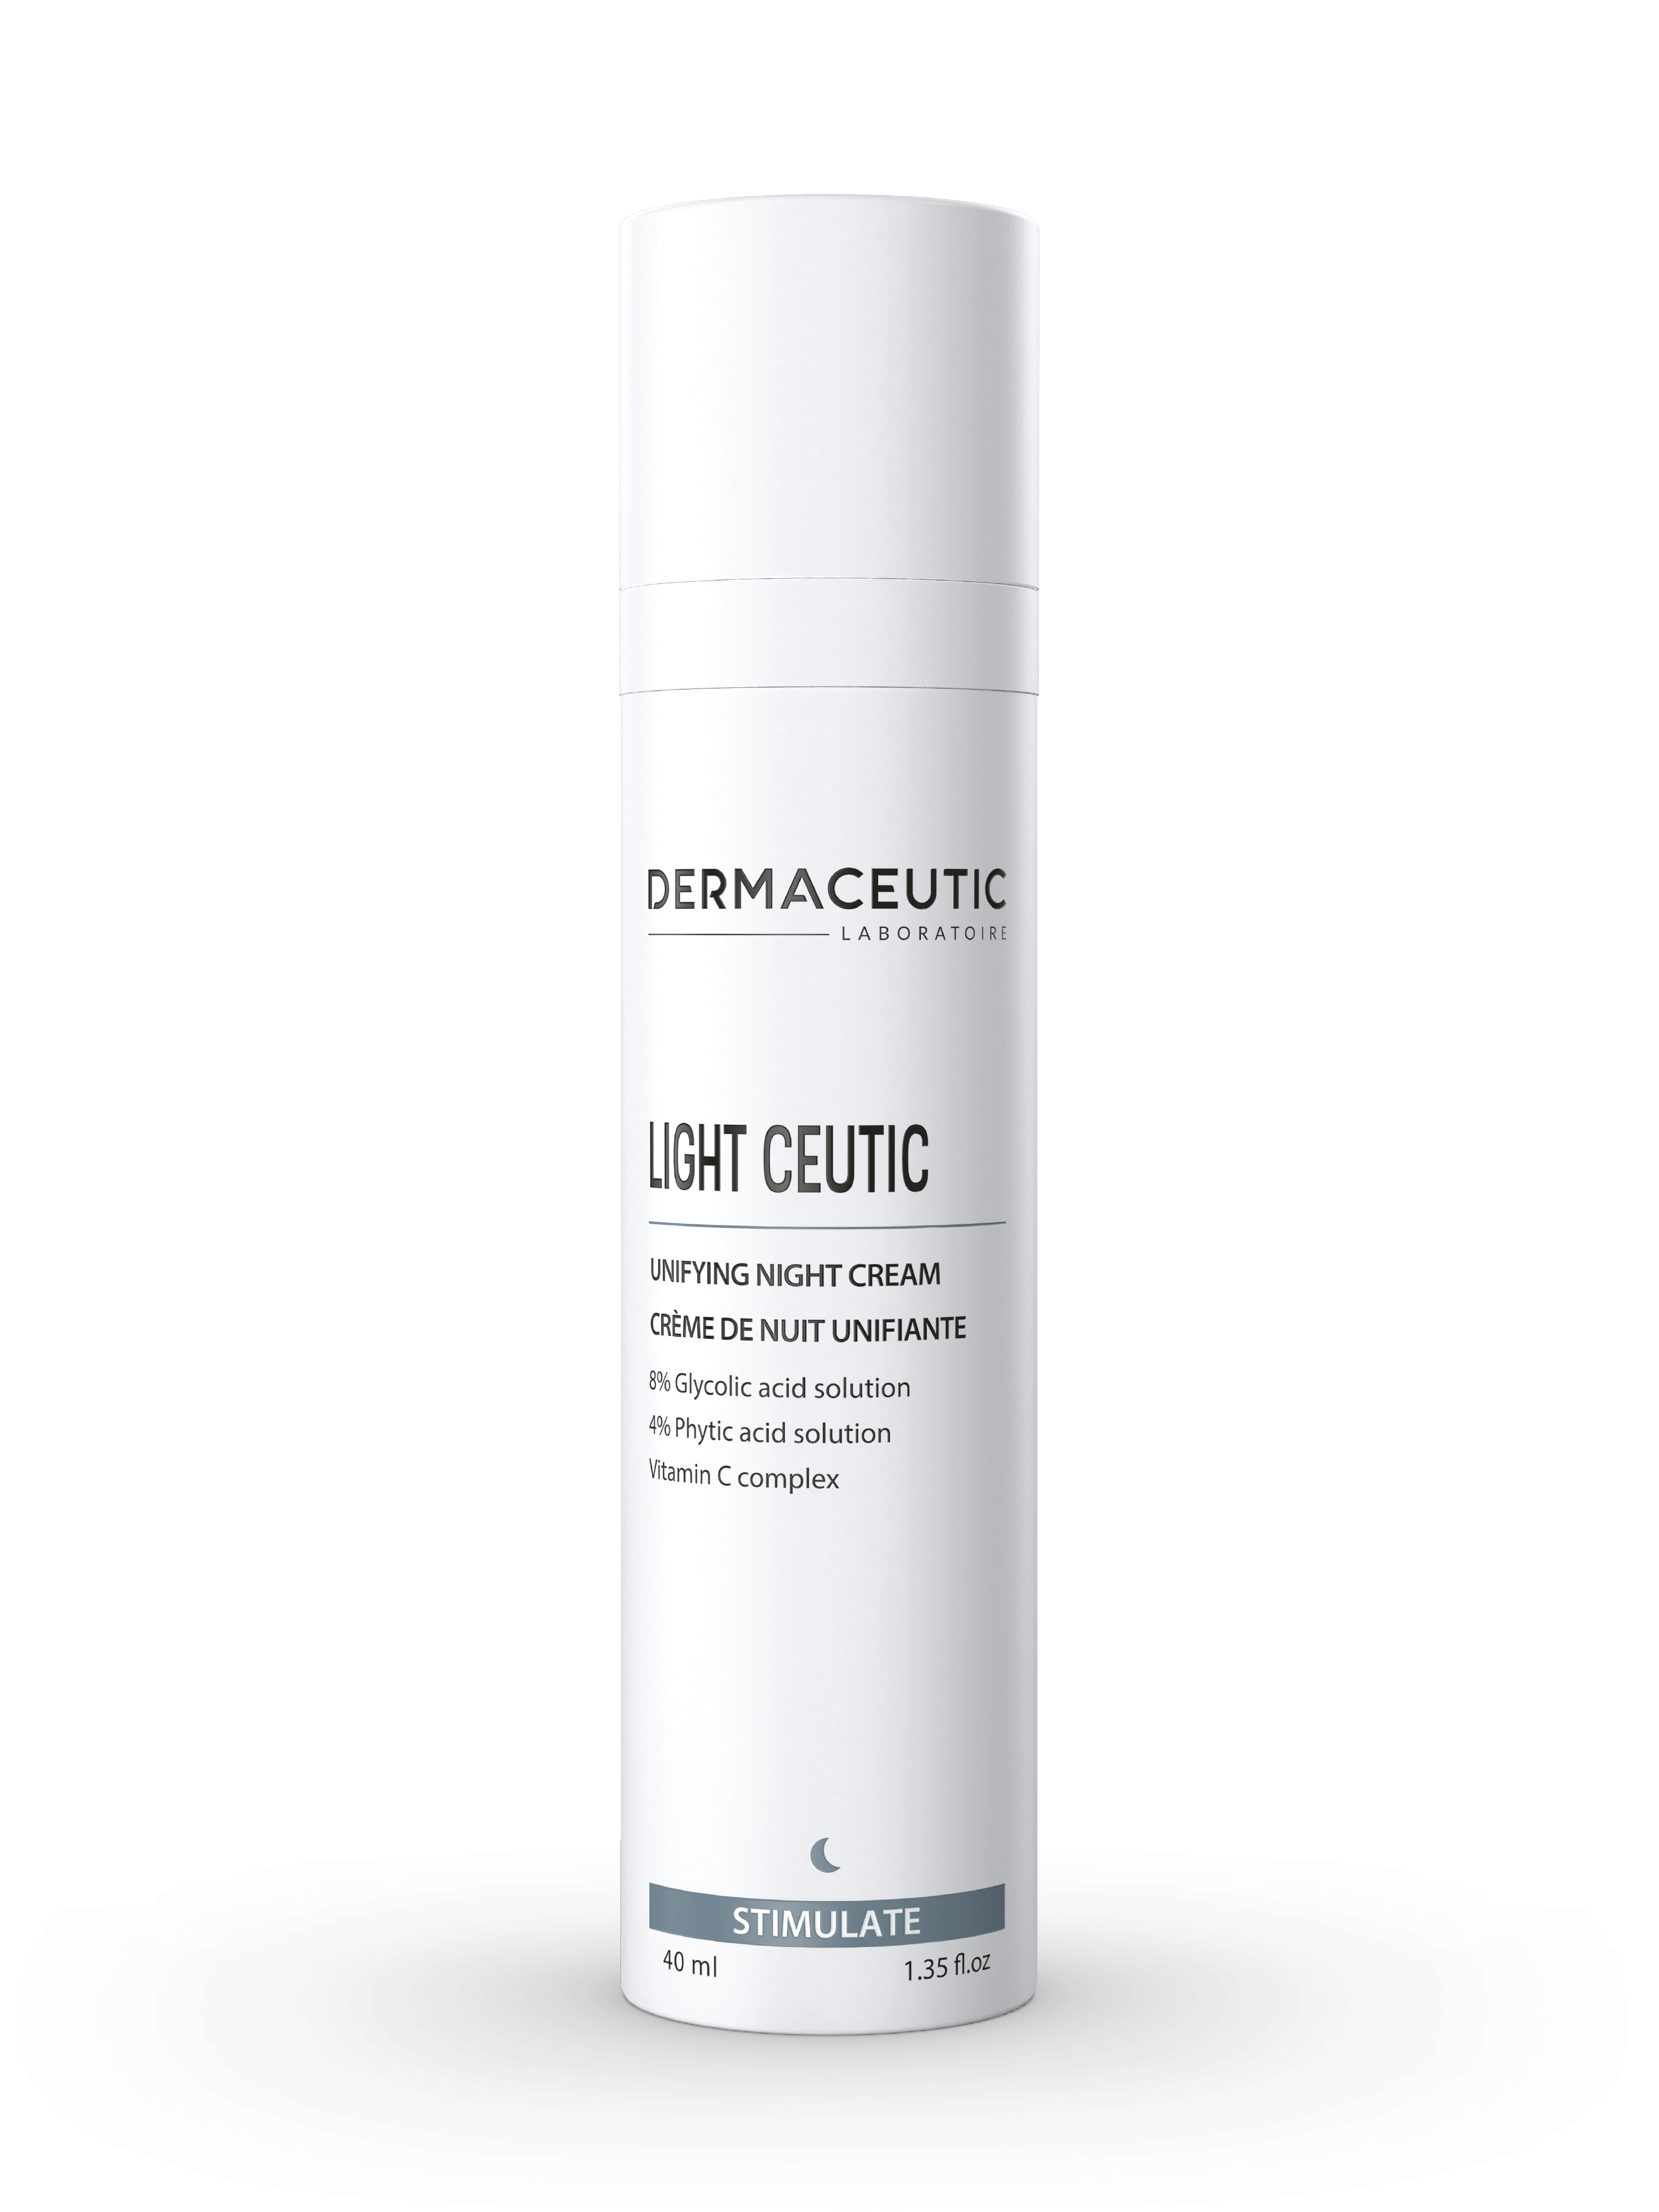 Dermaceutic Light Ceutic Unifying Night Cream, 40 ml